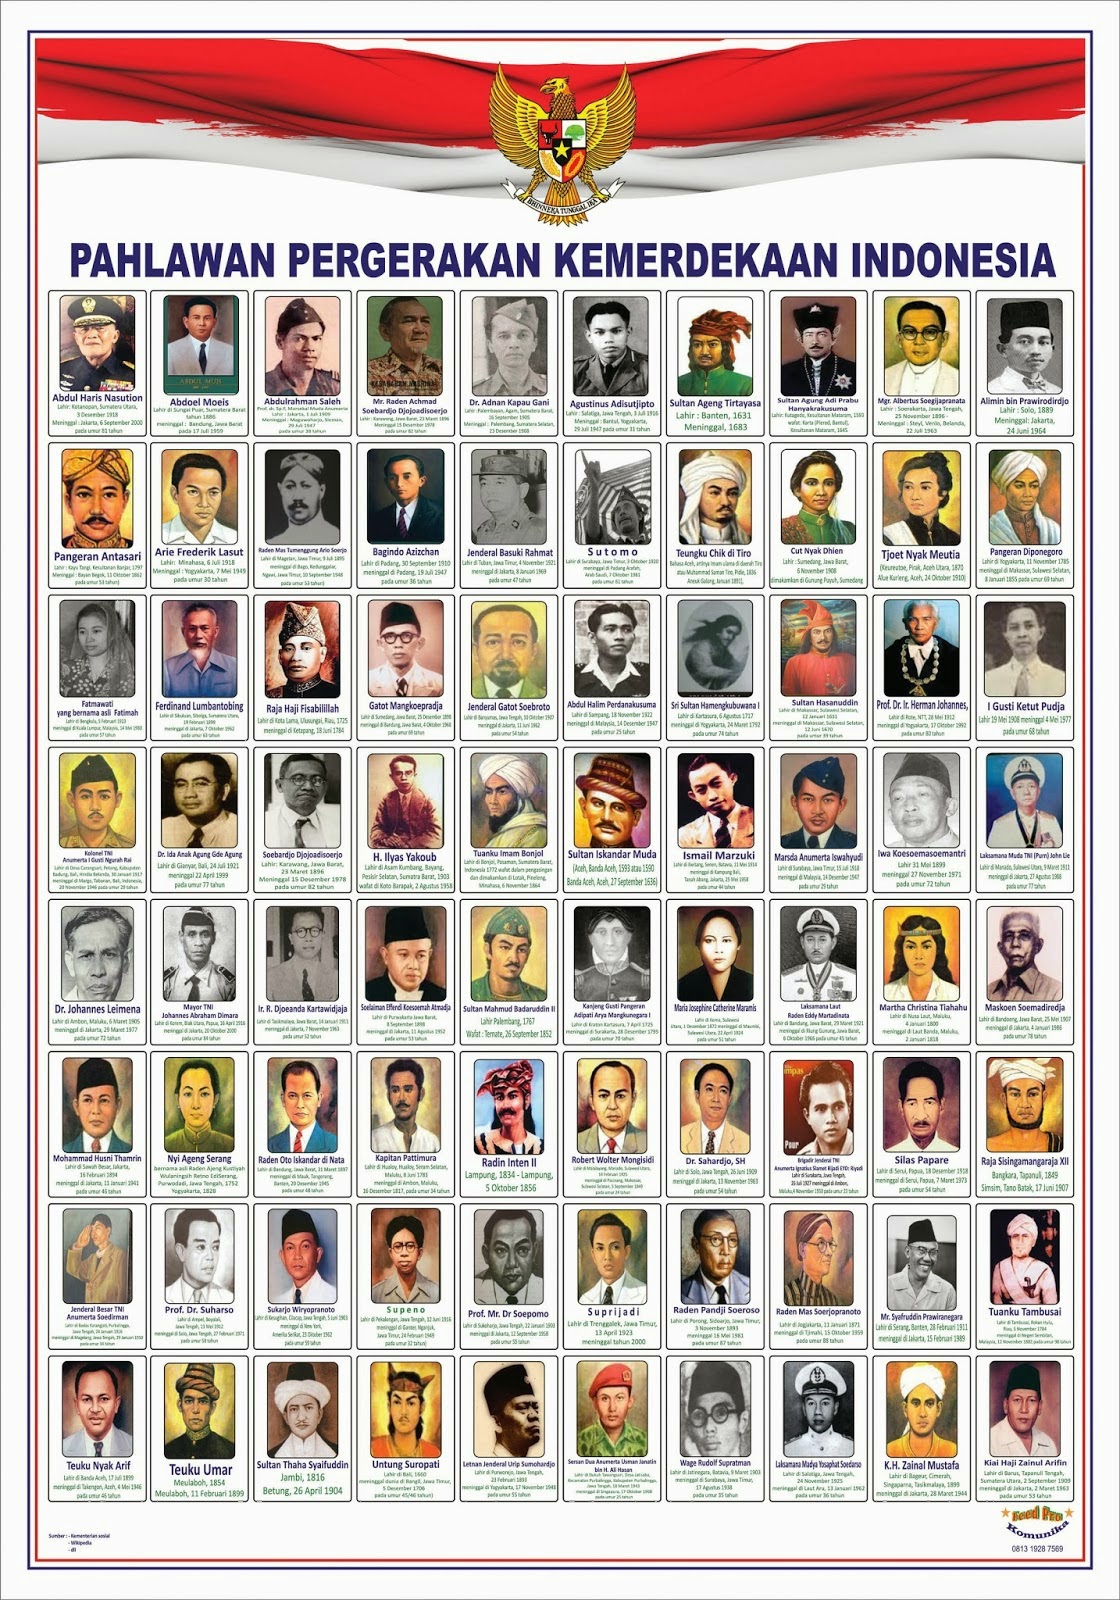 Daftar Nama Dan Gambar Pahlawan Nasional Indonesia Info Gtk Images Images